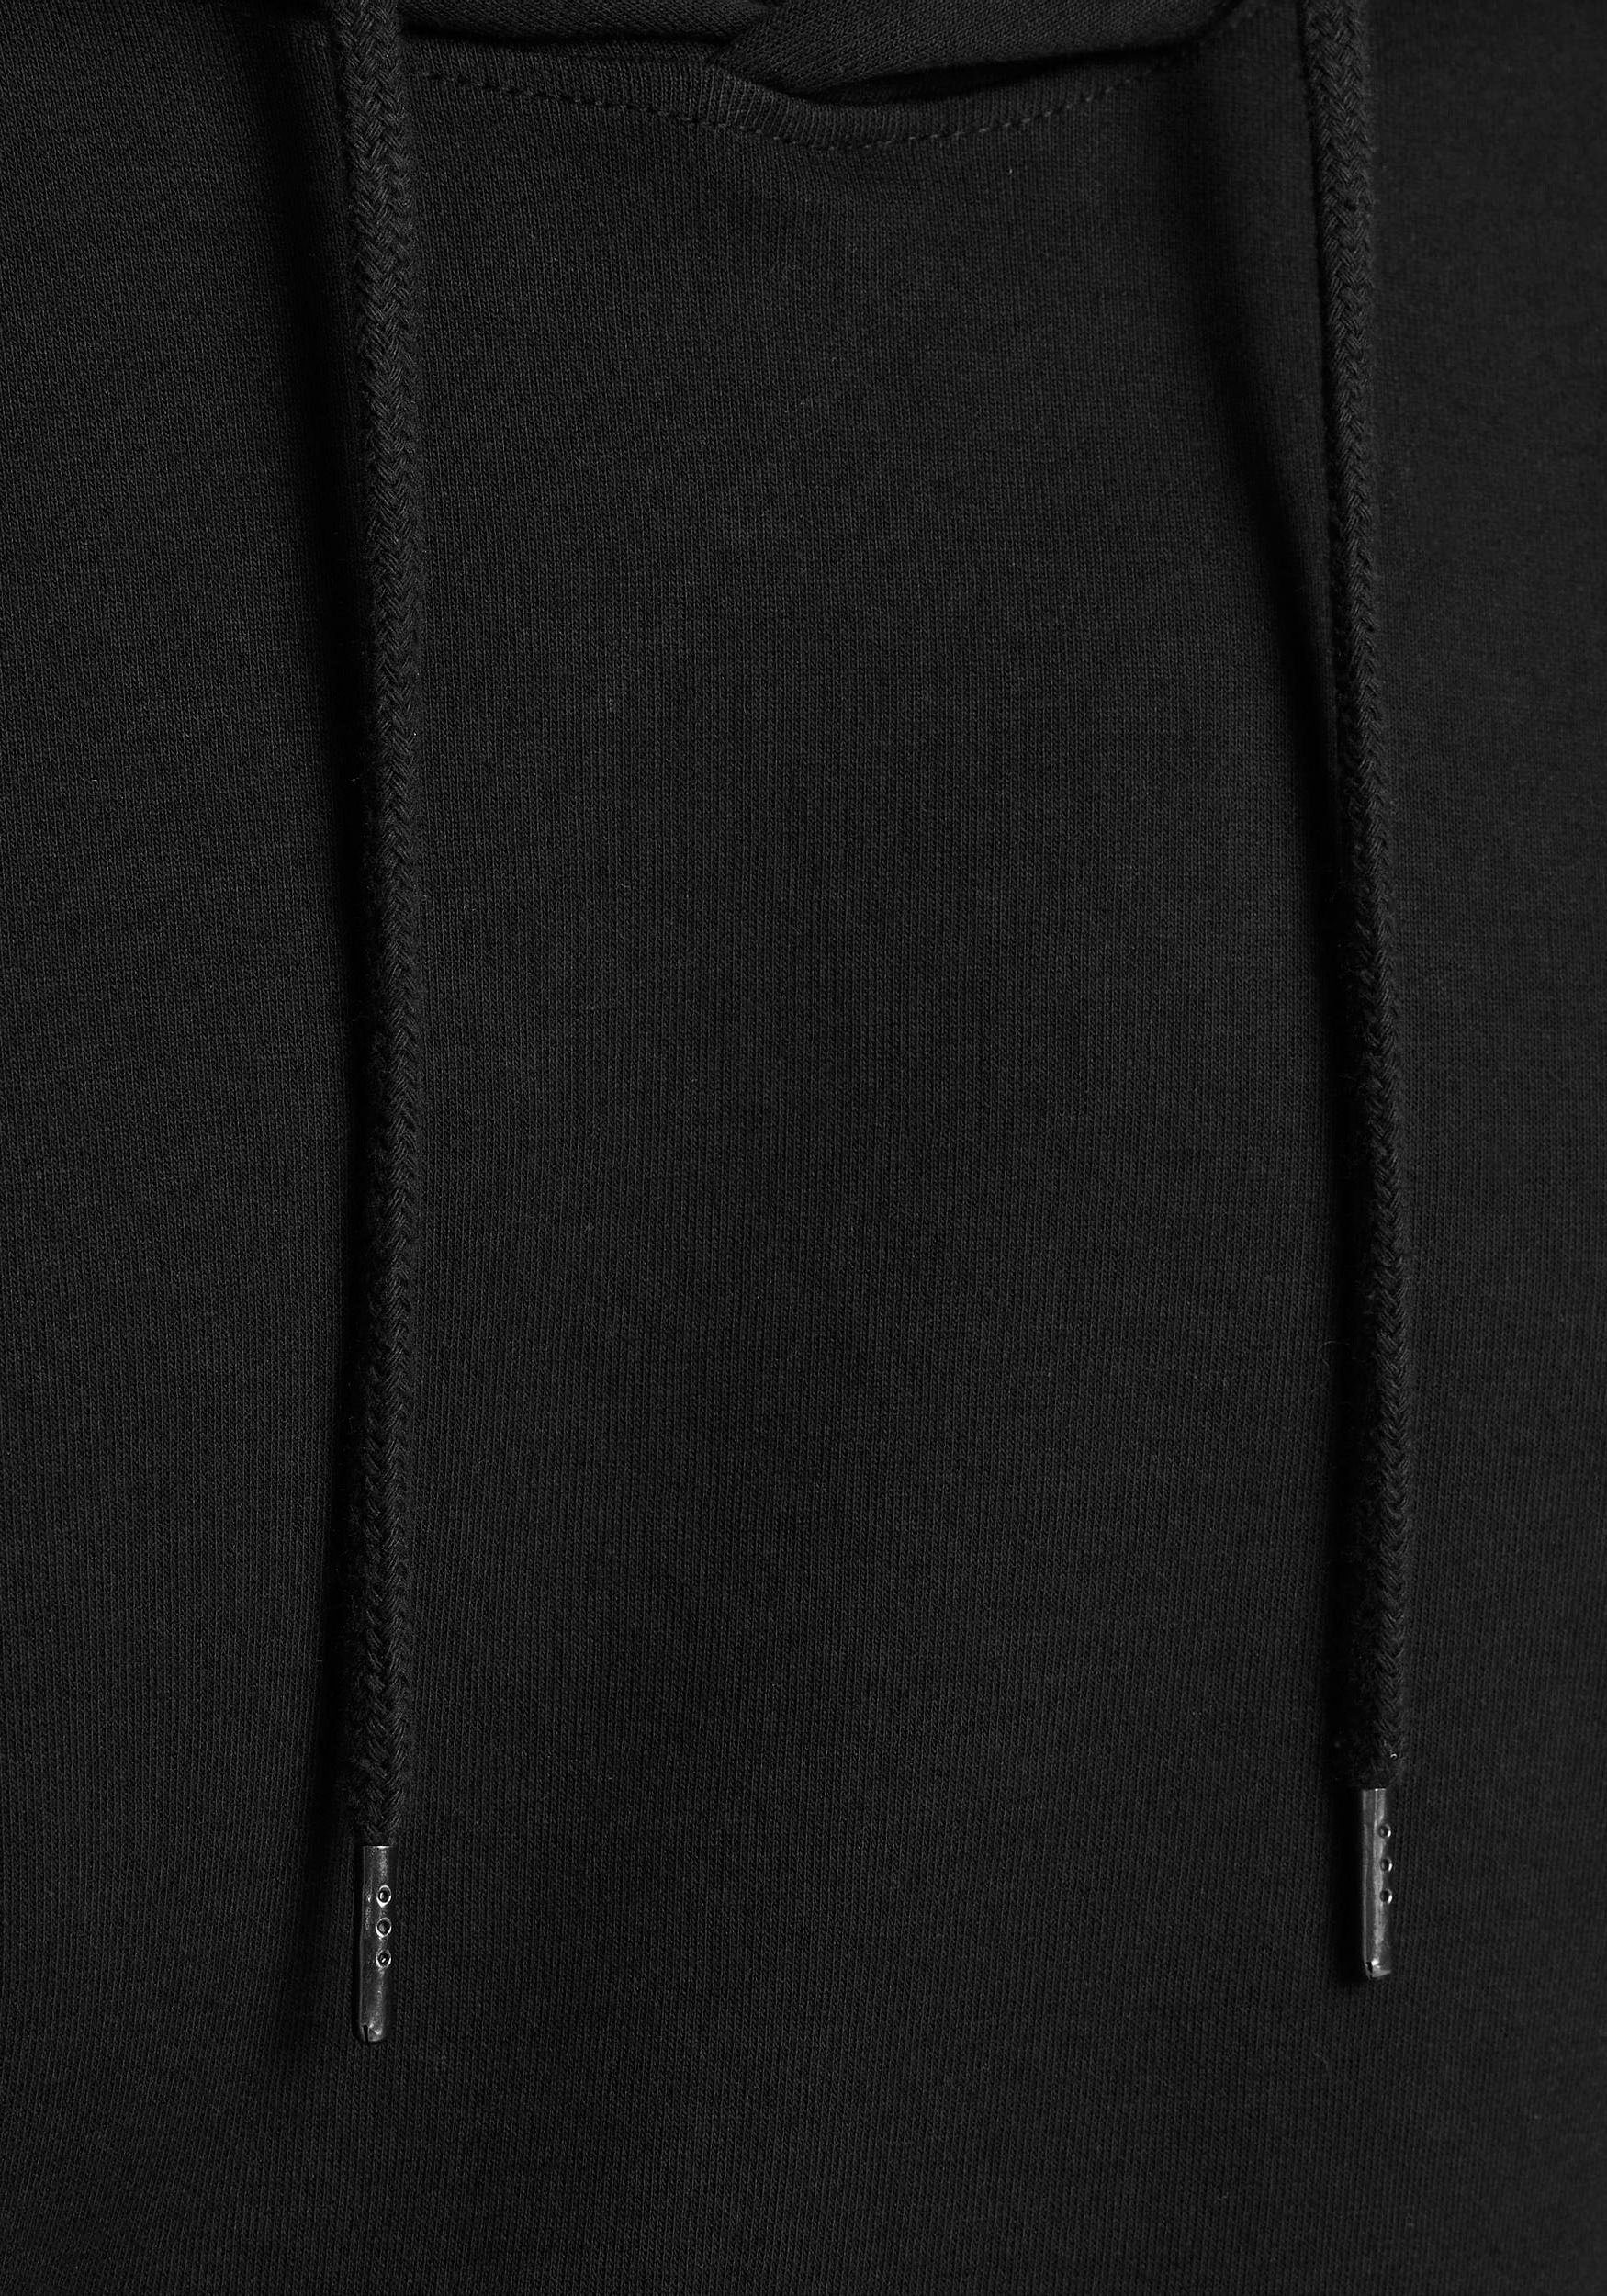 Jack & BASIC HOOD Jones SWEAT schwarz Kapuzensweatshirt